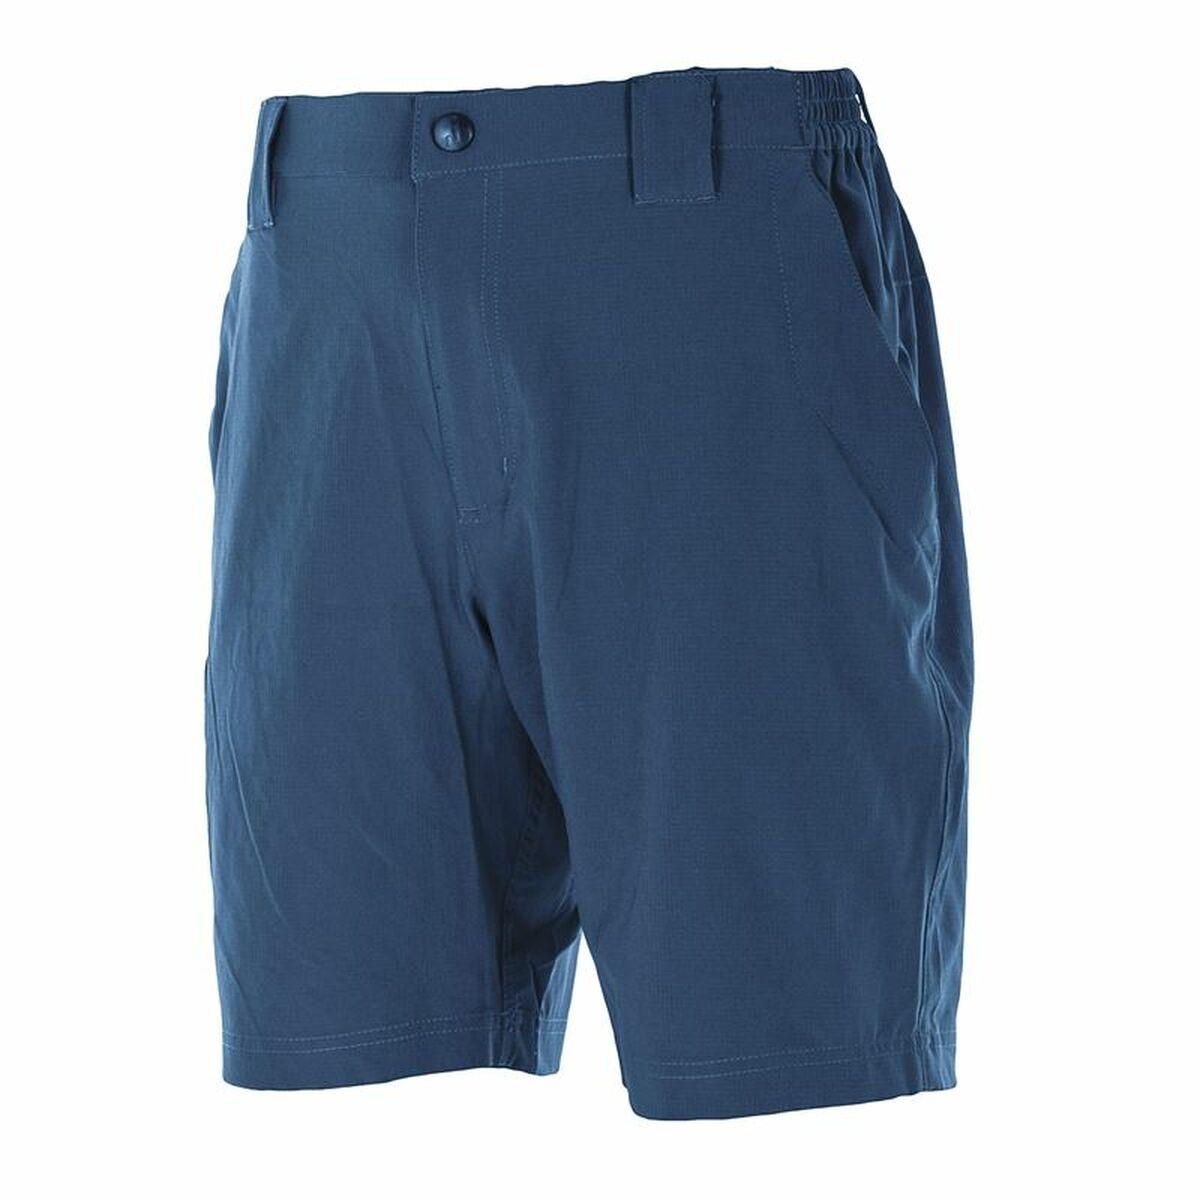 Billede af Sport shorts til mænd Joluvi Rips Blå L